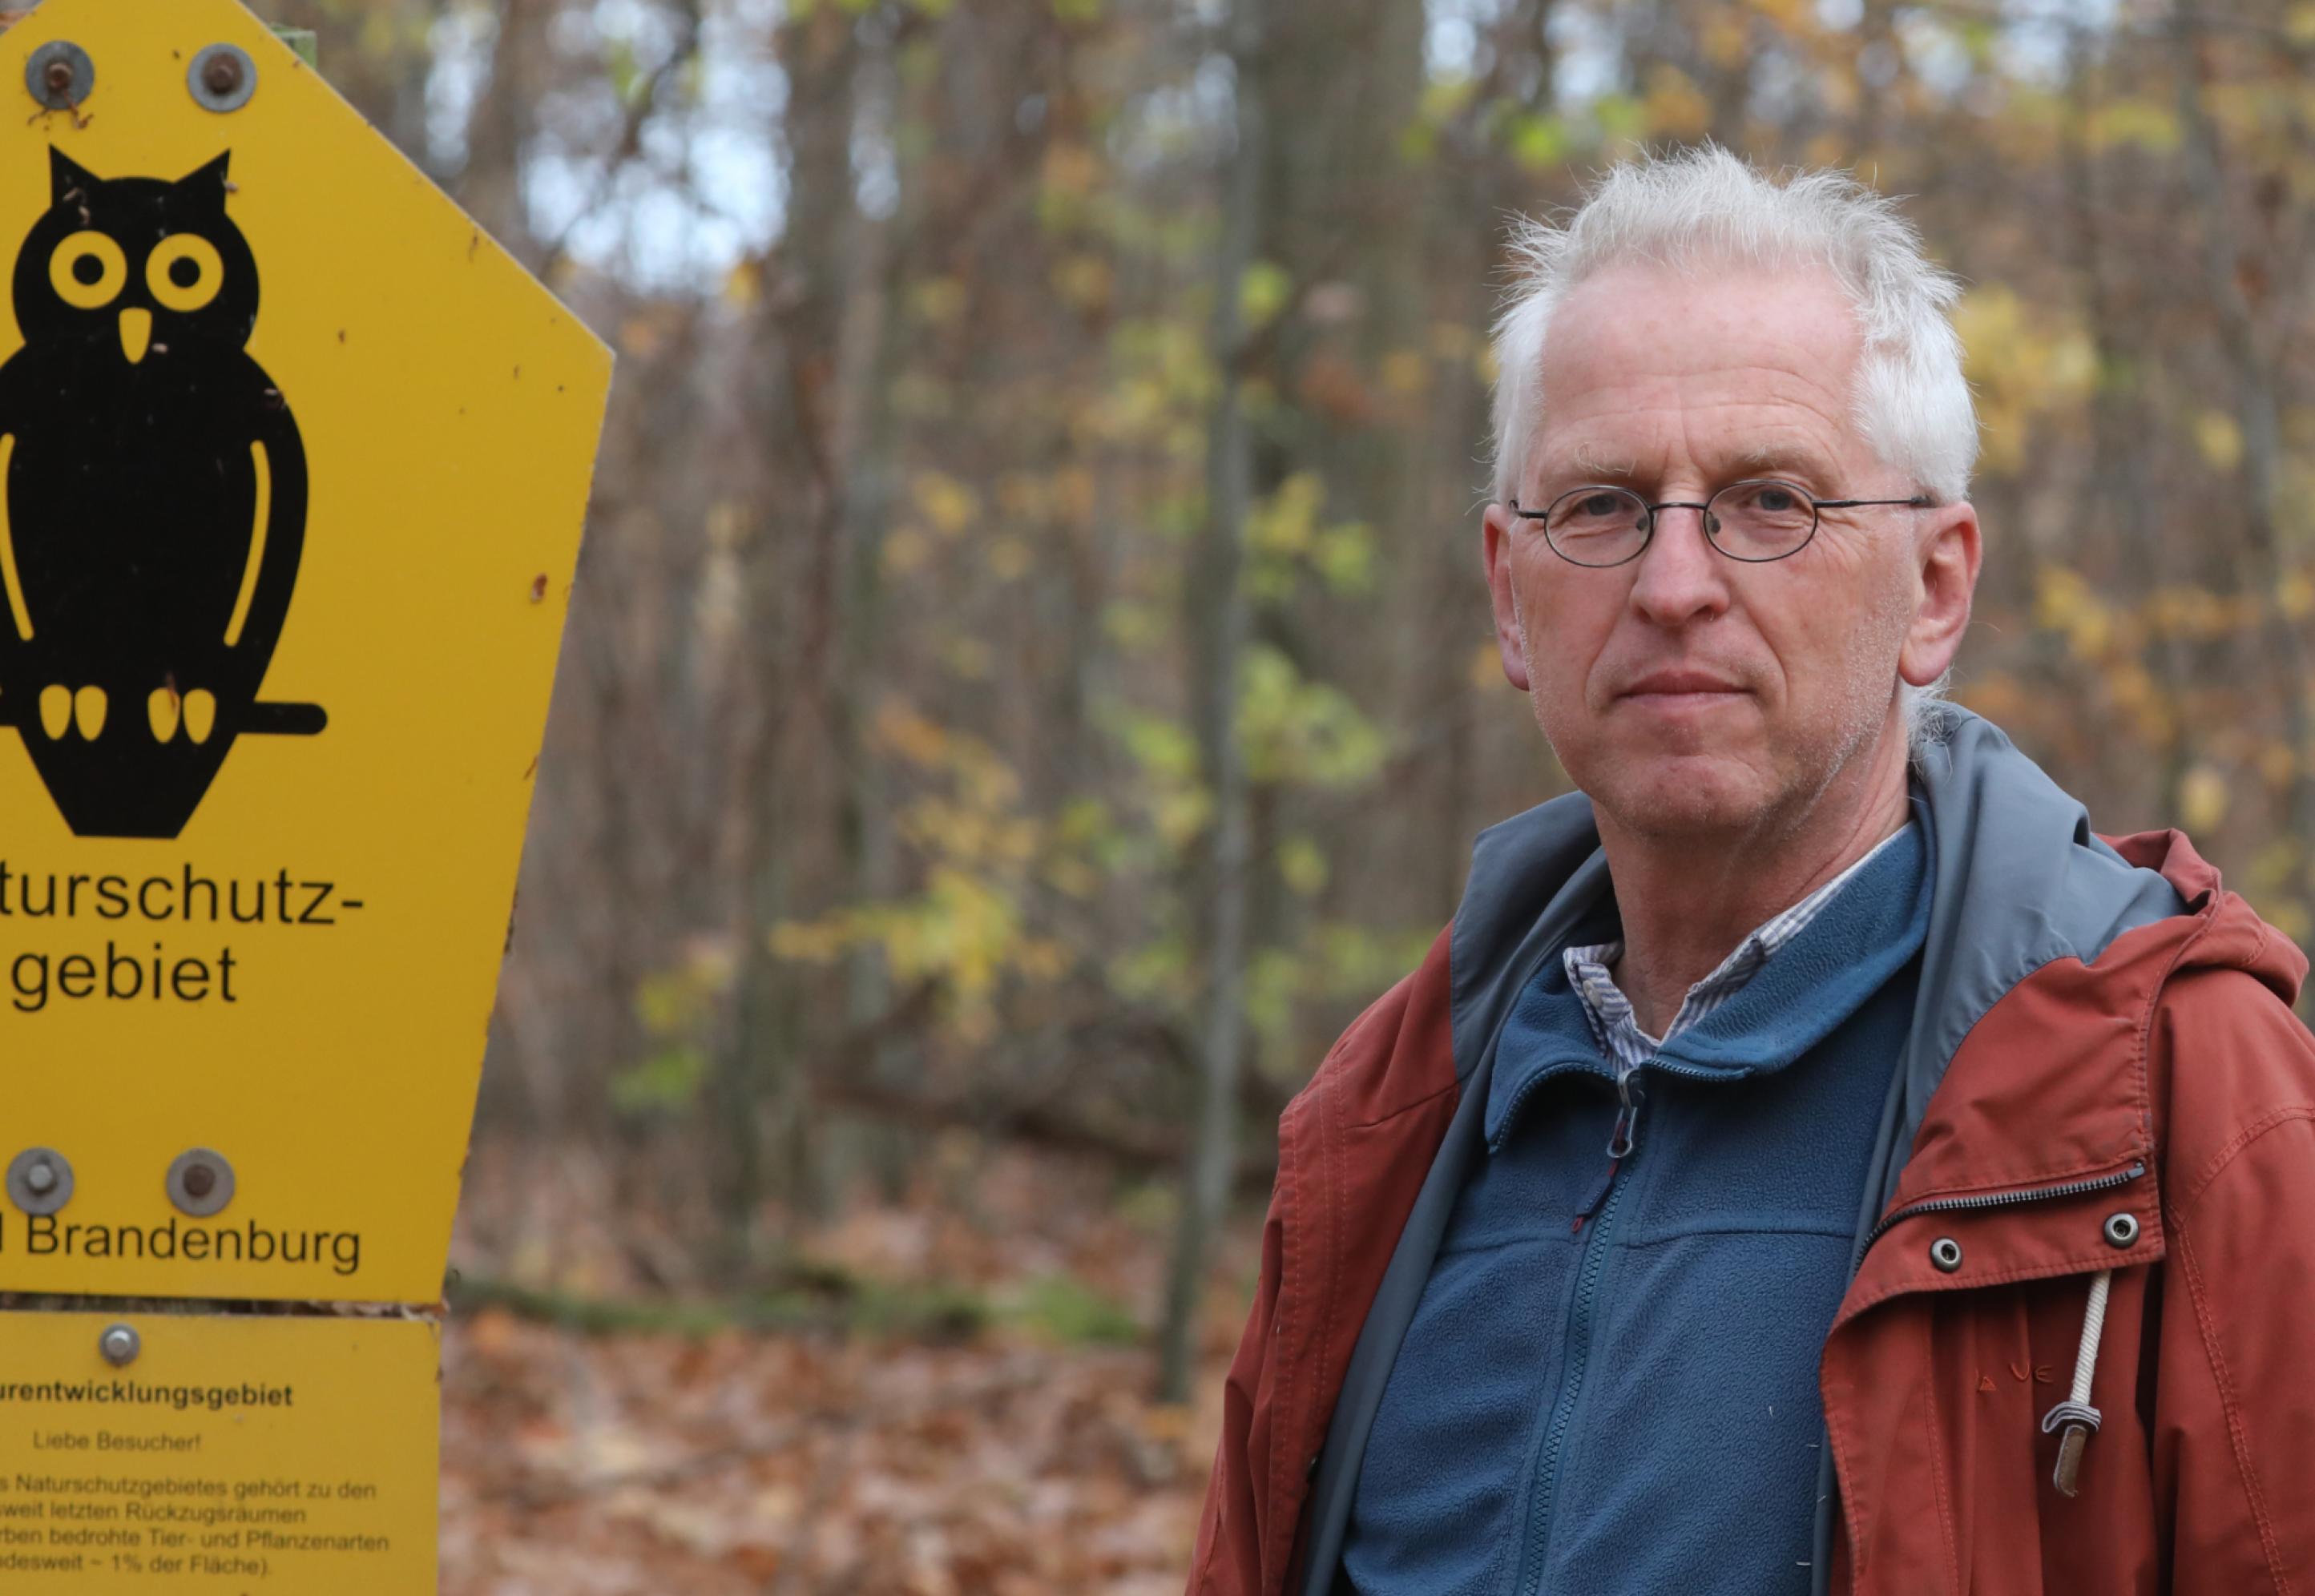 Martin Flade steht neben einem Naturschutzgebiet-Schild im Wald